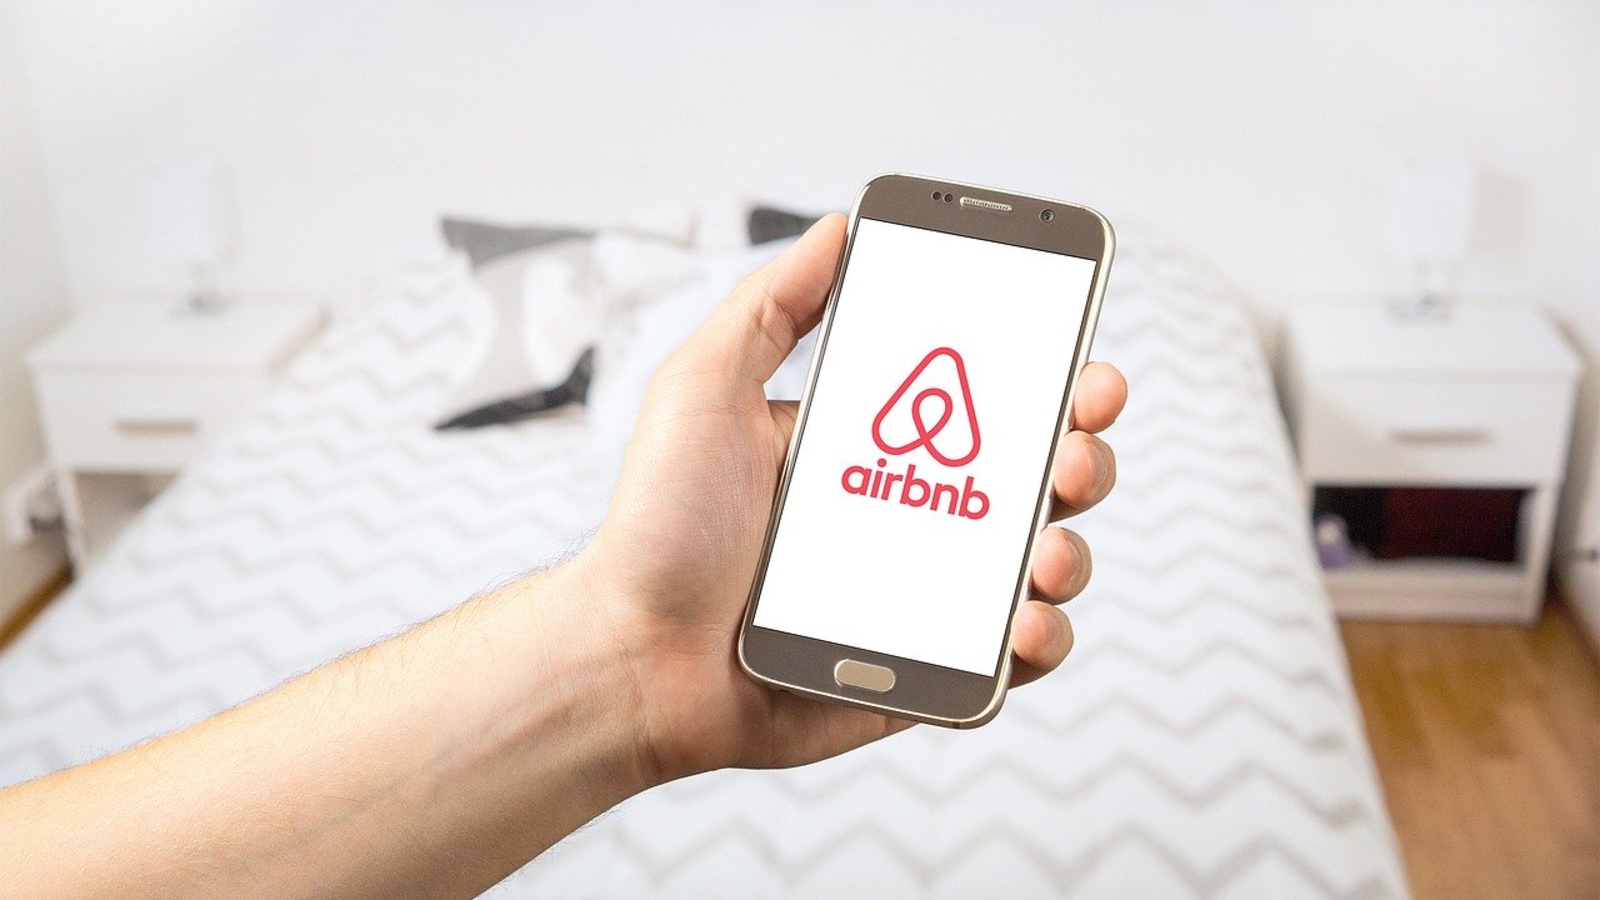 Airbnb : vous aussi vous avez reçu une notification Test dev ?